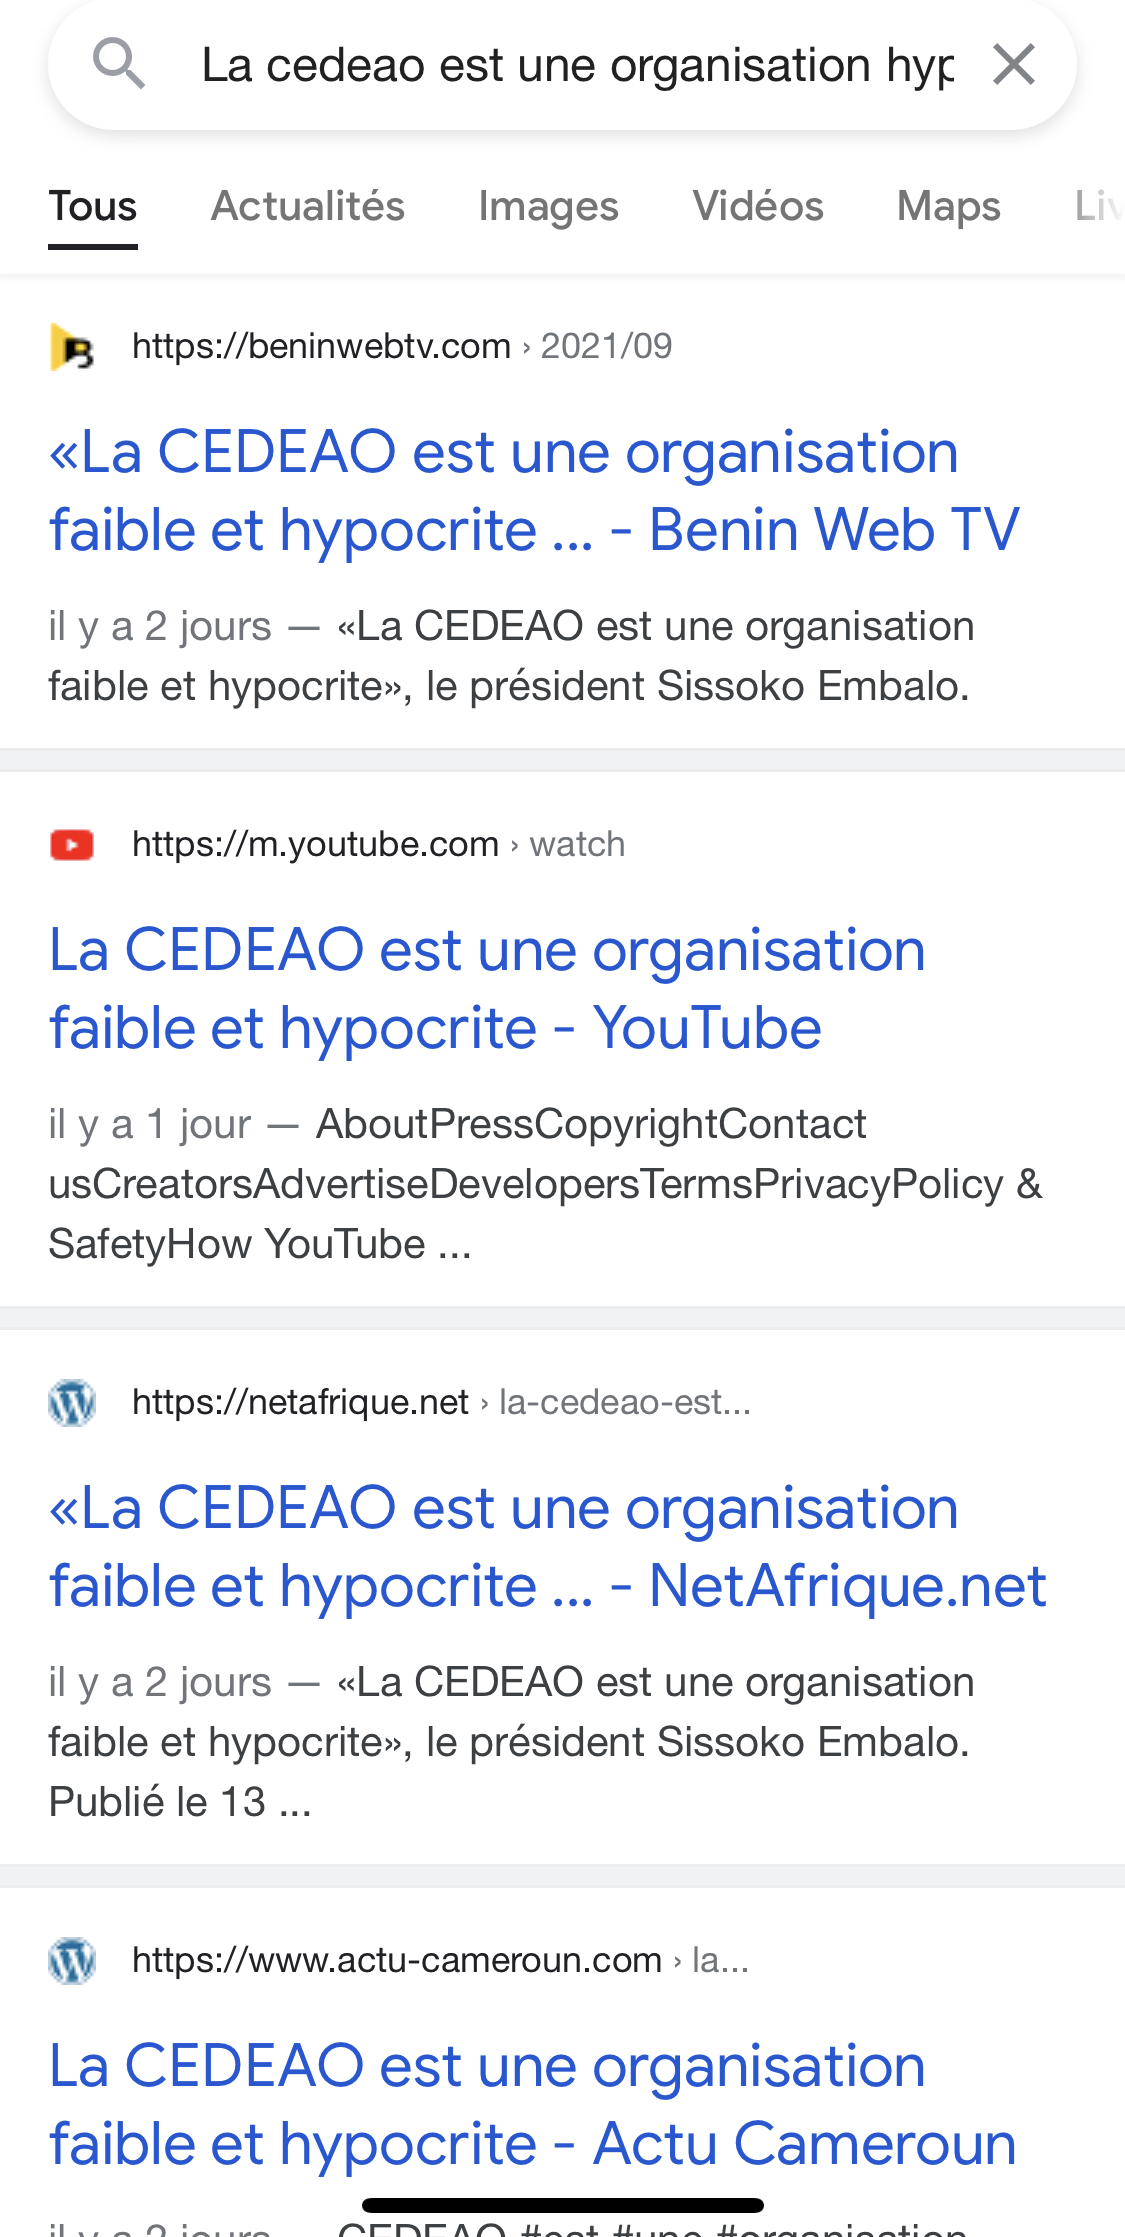 "La CEDEAO est une organisation hypocrite, sans réel pouvoir": sur les traces de faux propos attribués au Président Bissau-guinéen